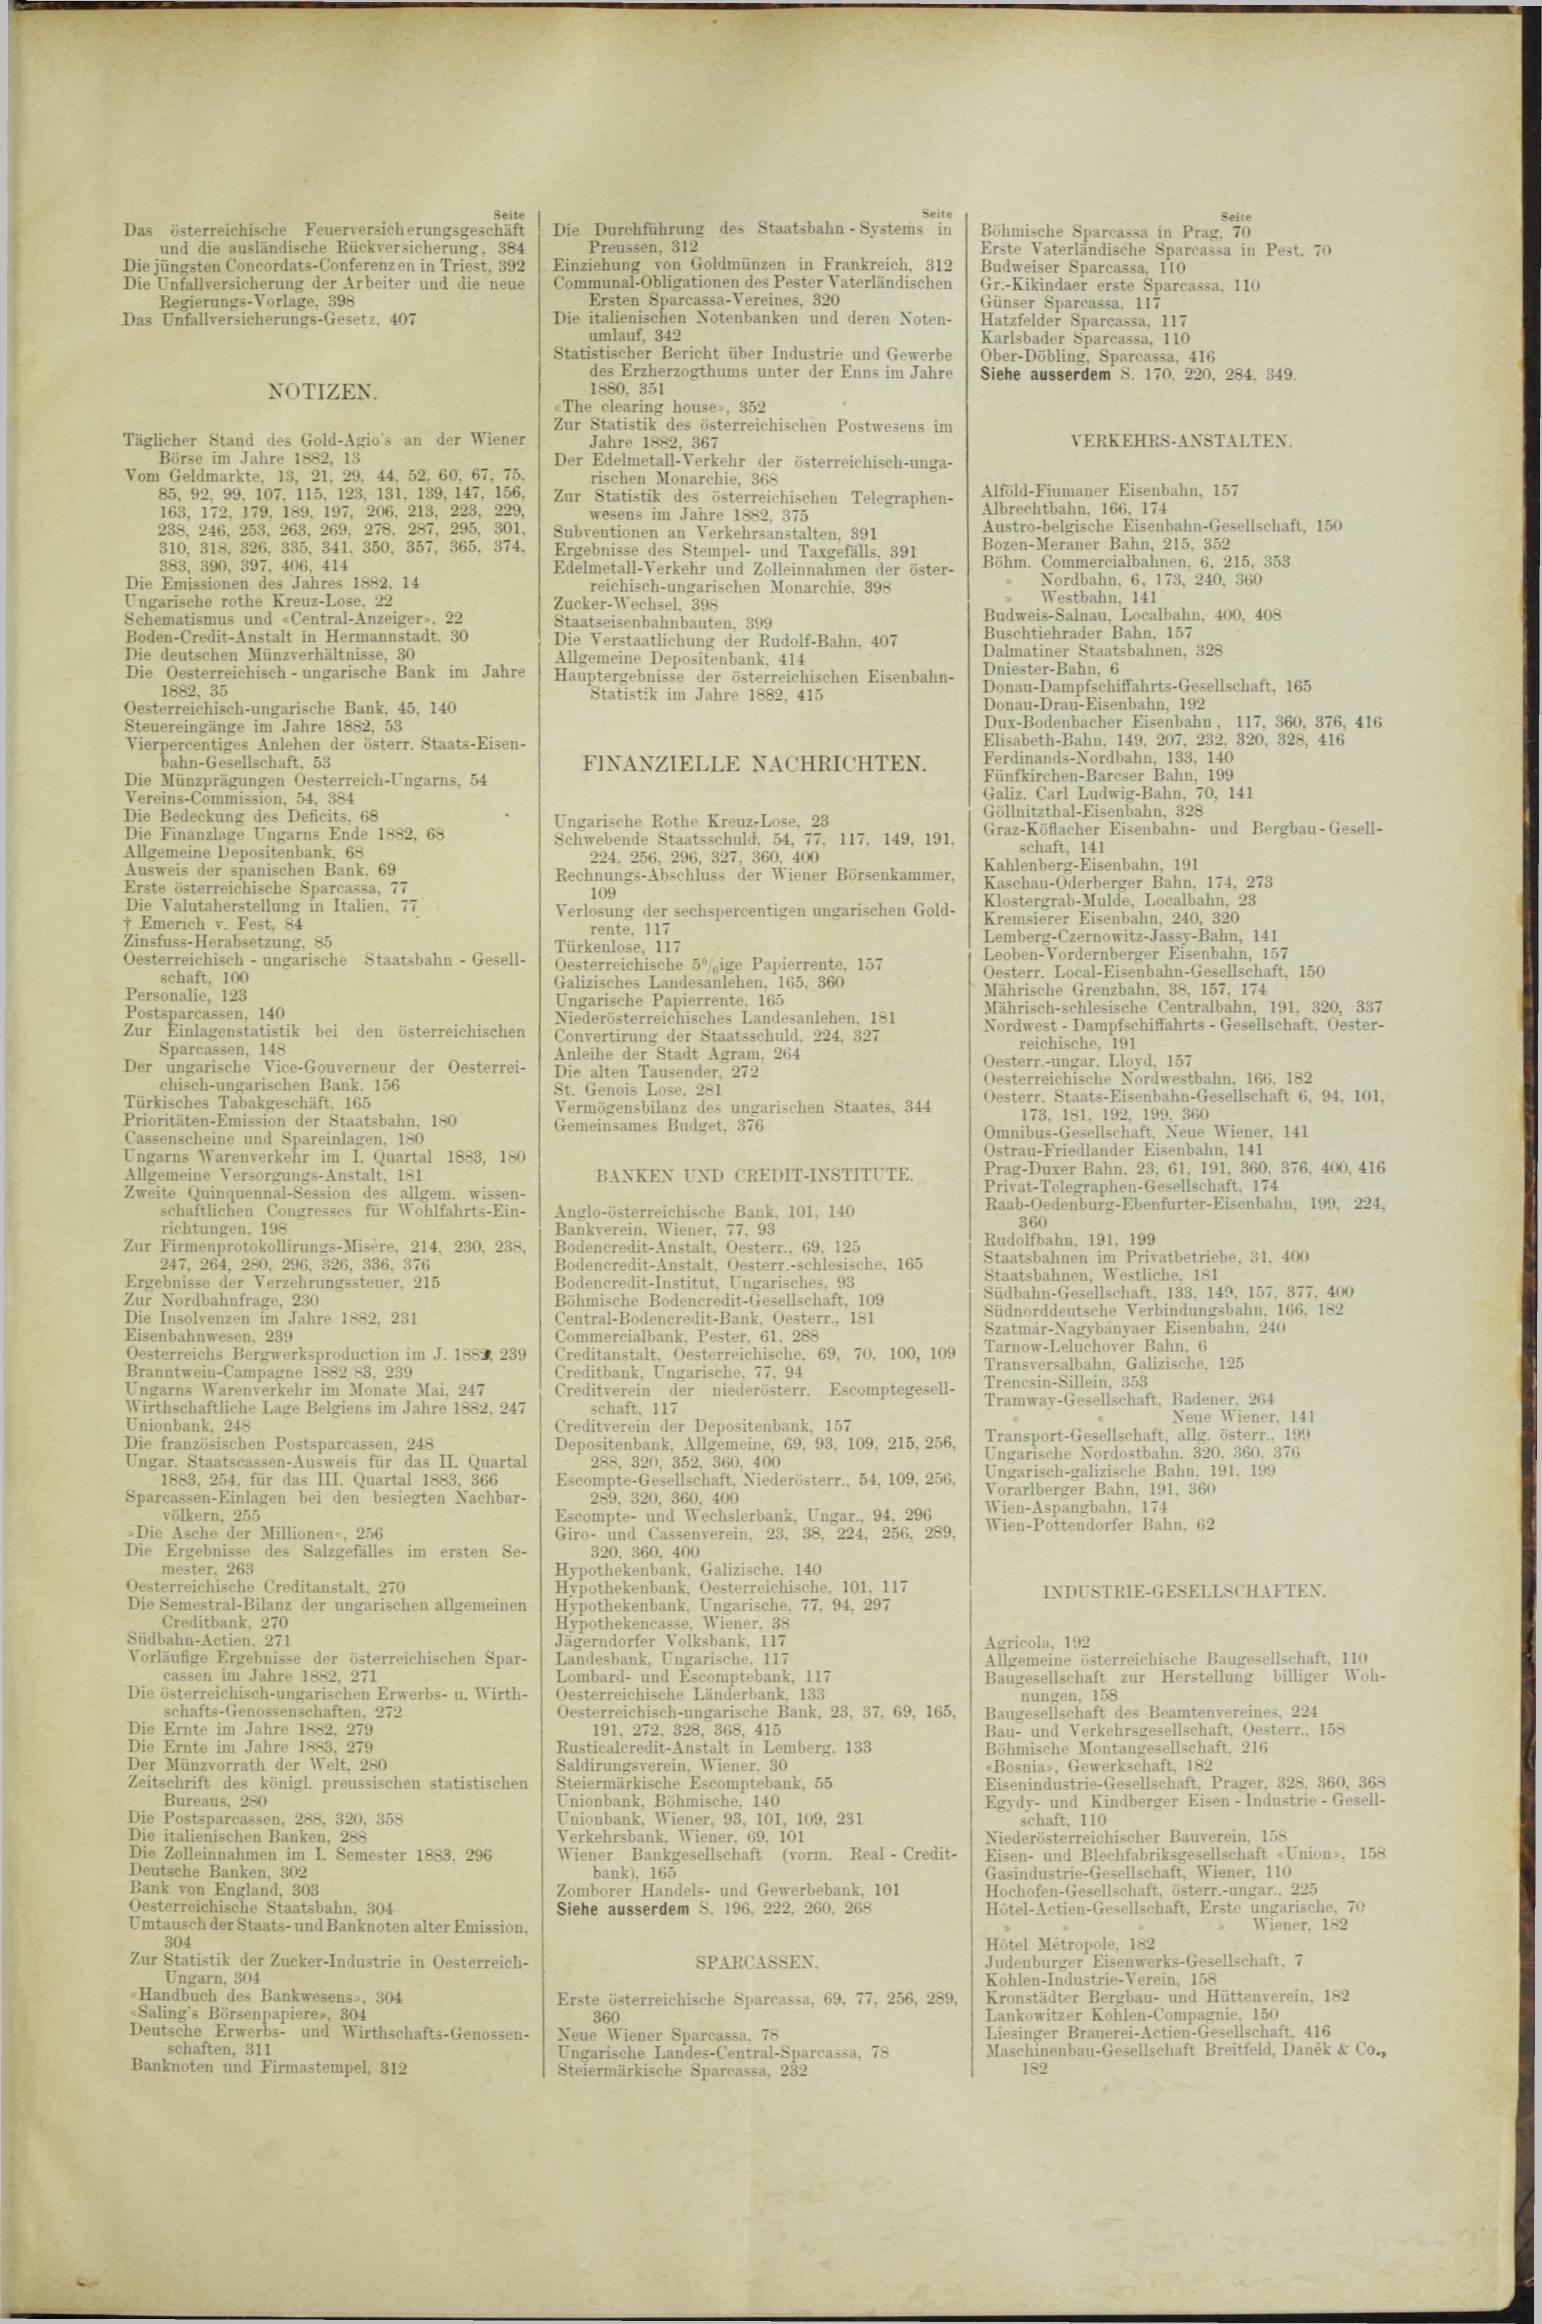 Der Tresor 01.11.1883 - Seite 11